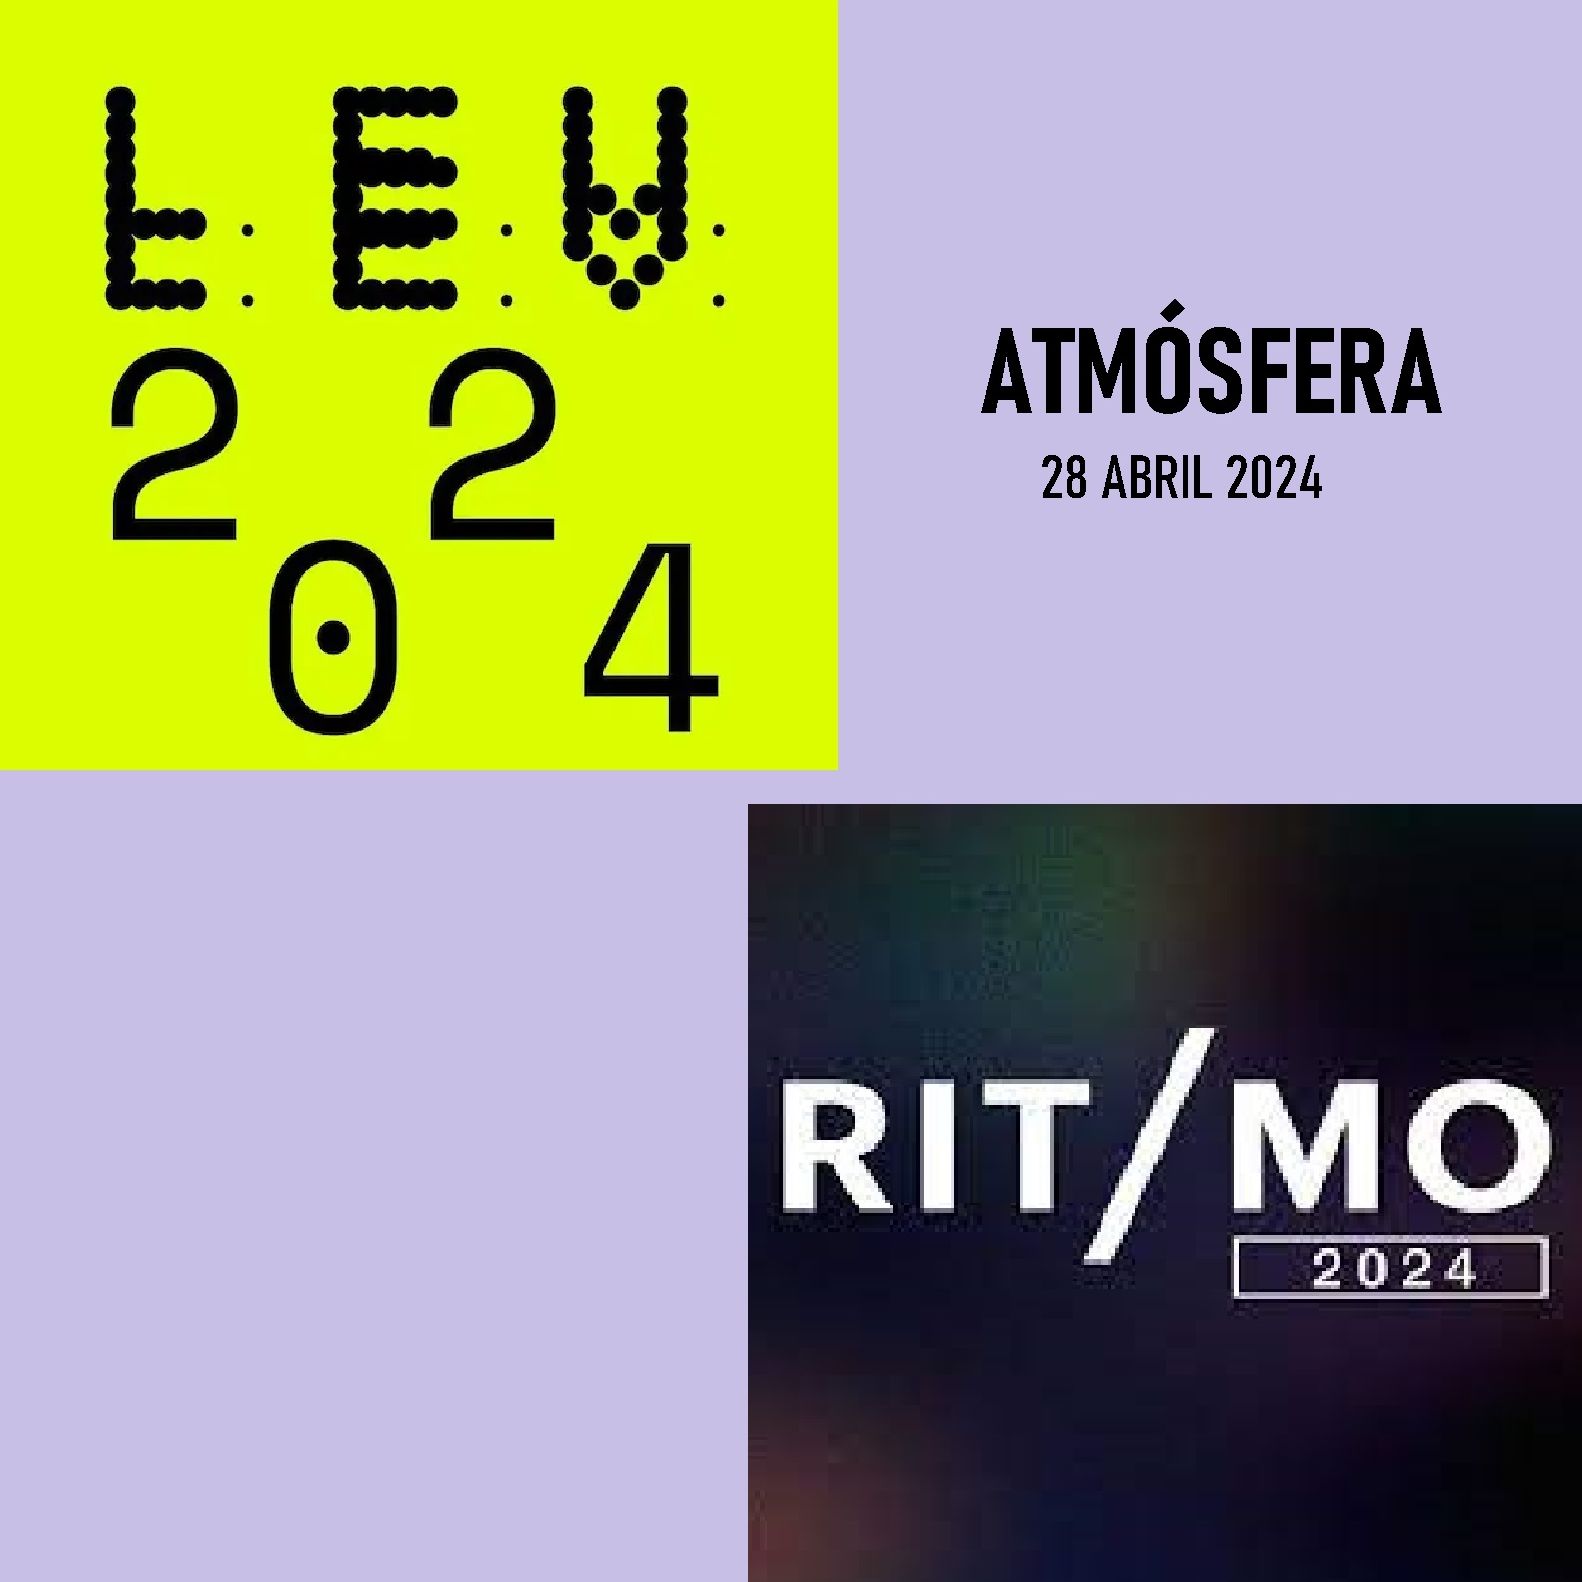 Atmósfera - Festivales: LEV y Ritmo - 28/04/24